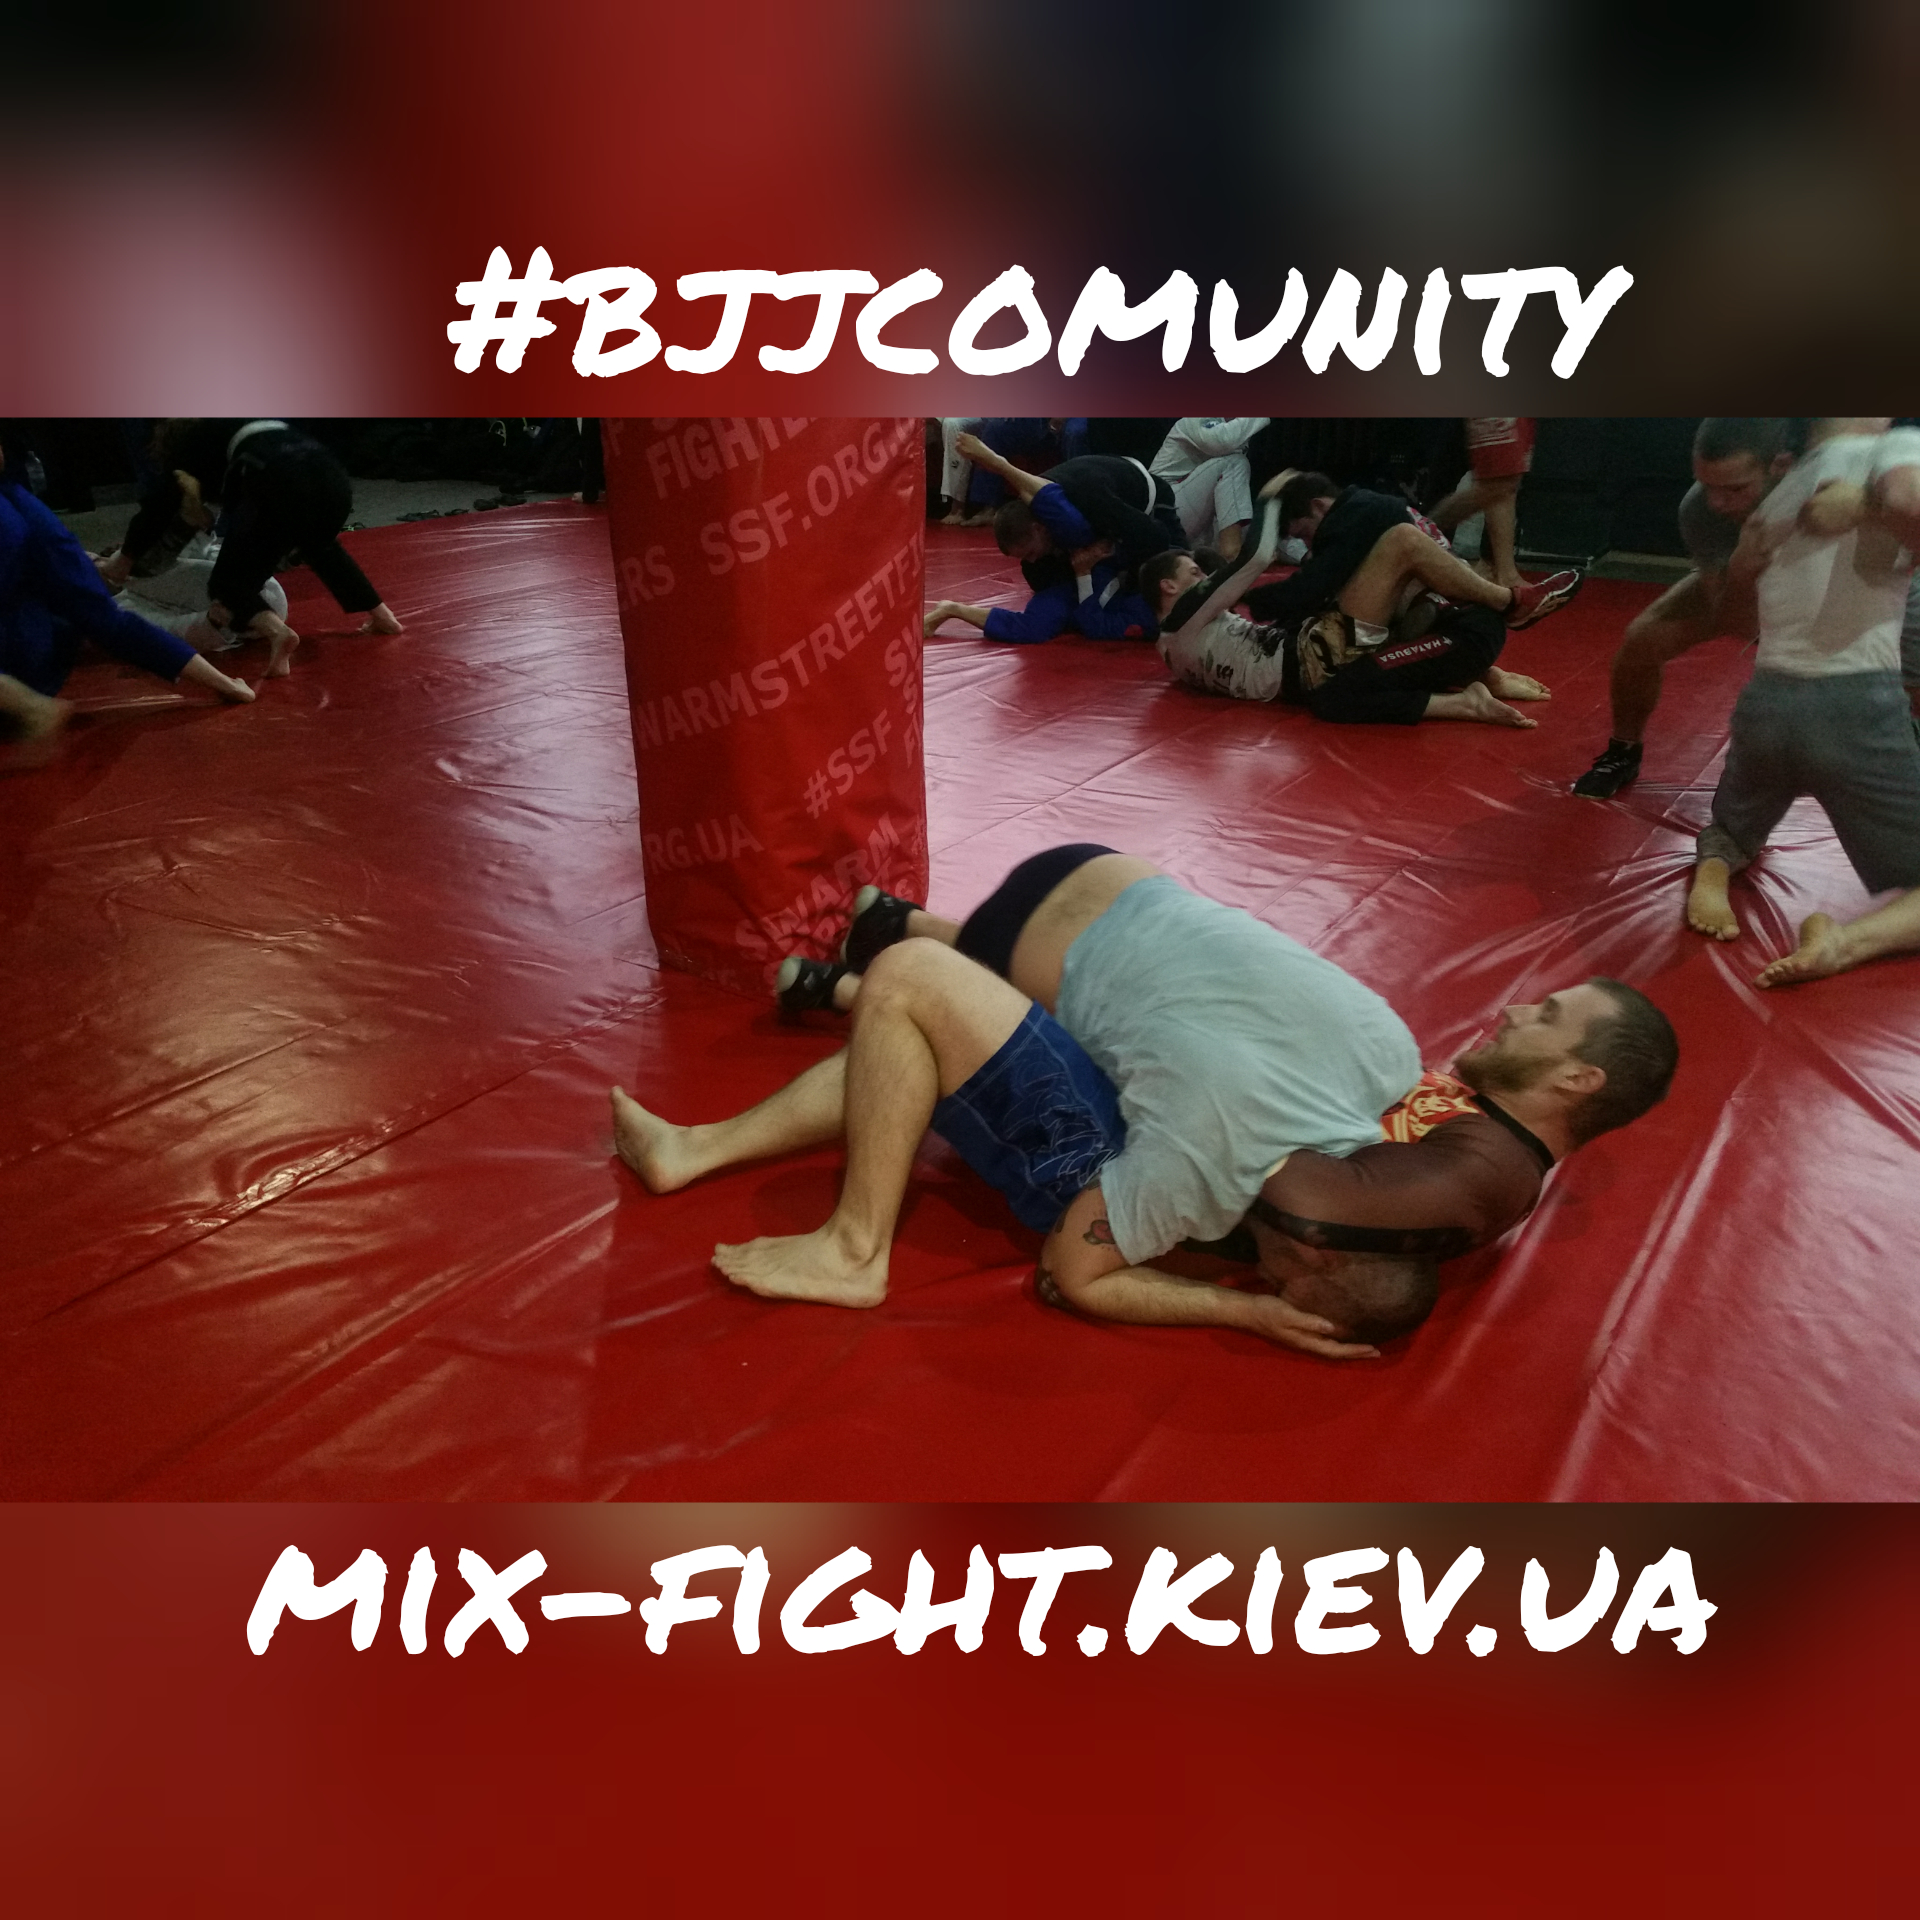 MMA_Kiev_Boxing_111 mix-fight.kiev.ua.jpg